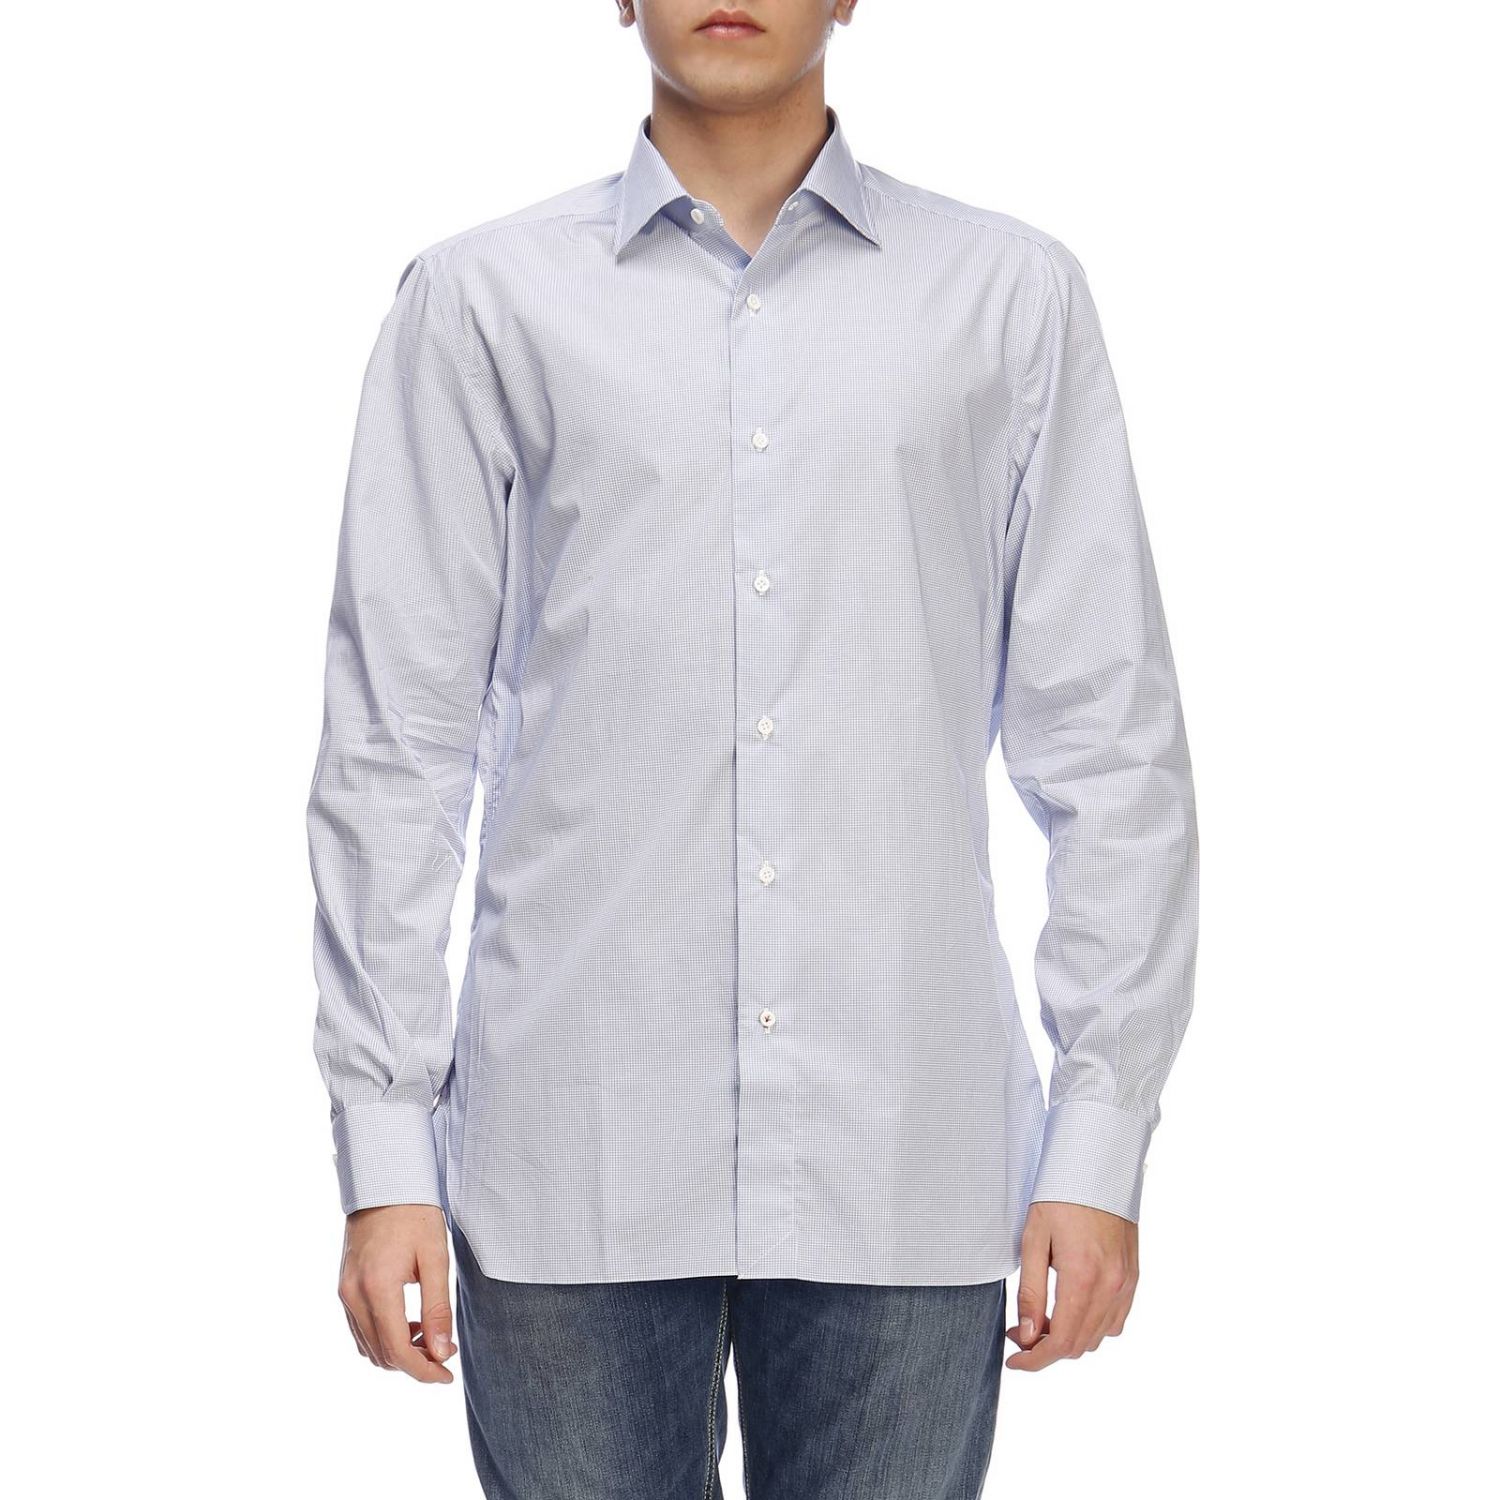 Isaia Outlet: Shirt men | Shirt Isaia Men Gnawed Blue | Shirt Isaia ...